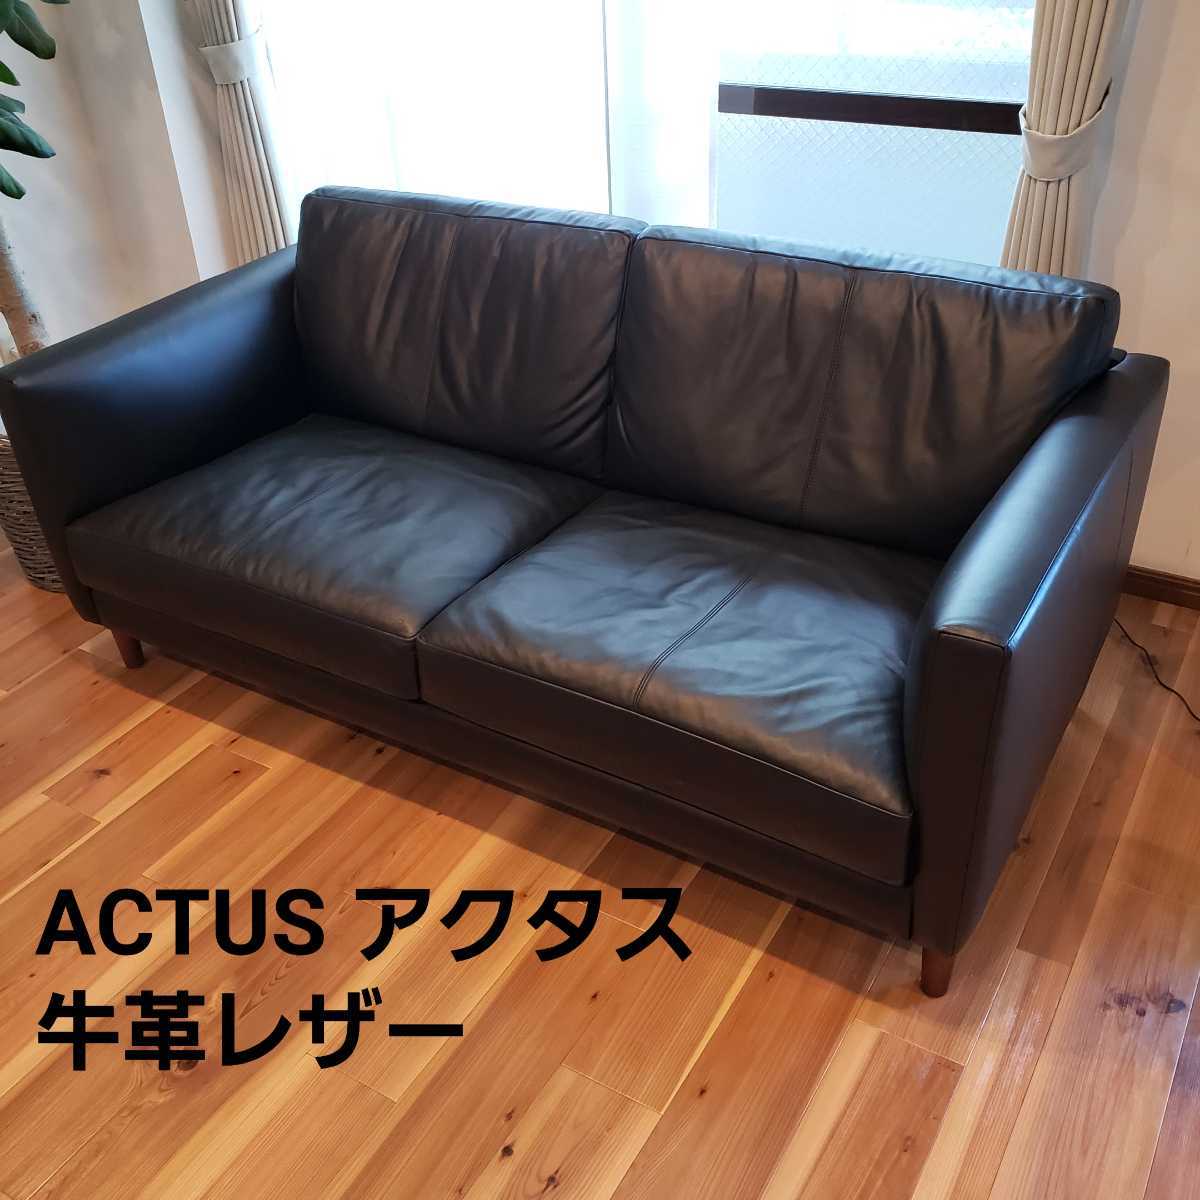 新発売の ヘッドレスト ACTUS five by 3350